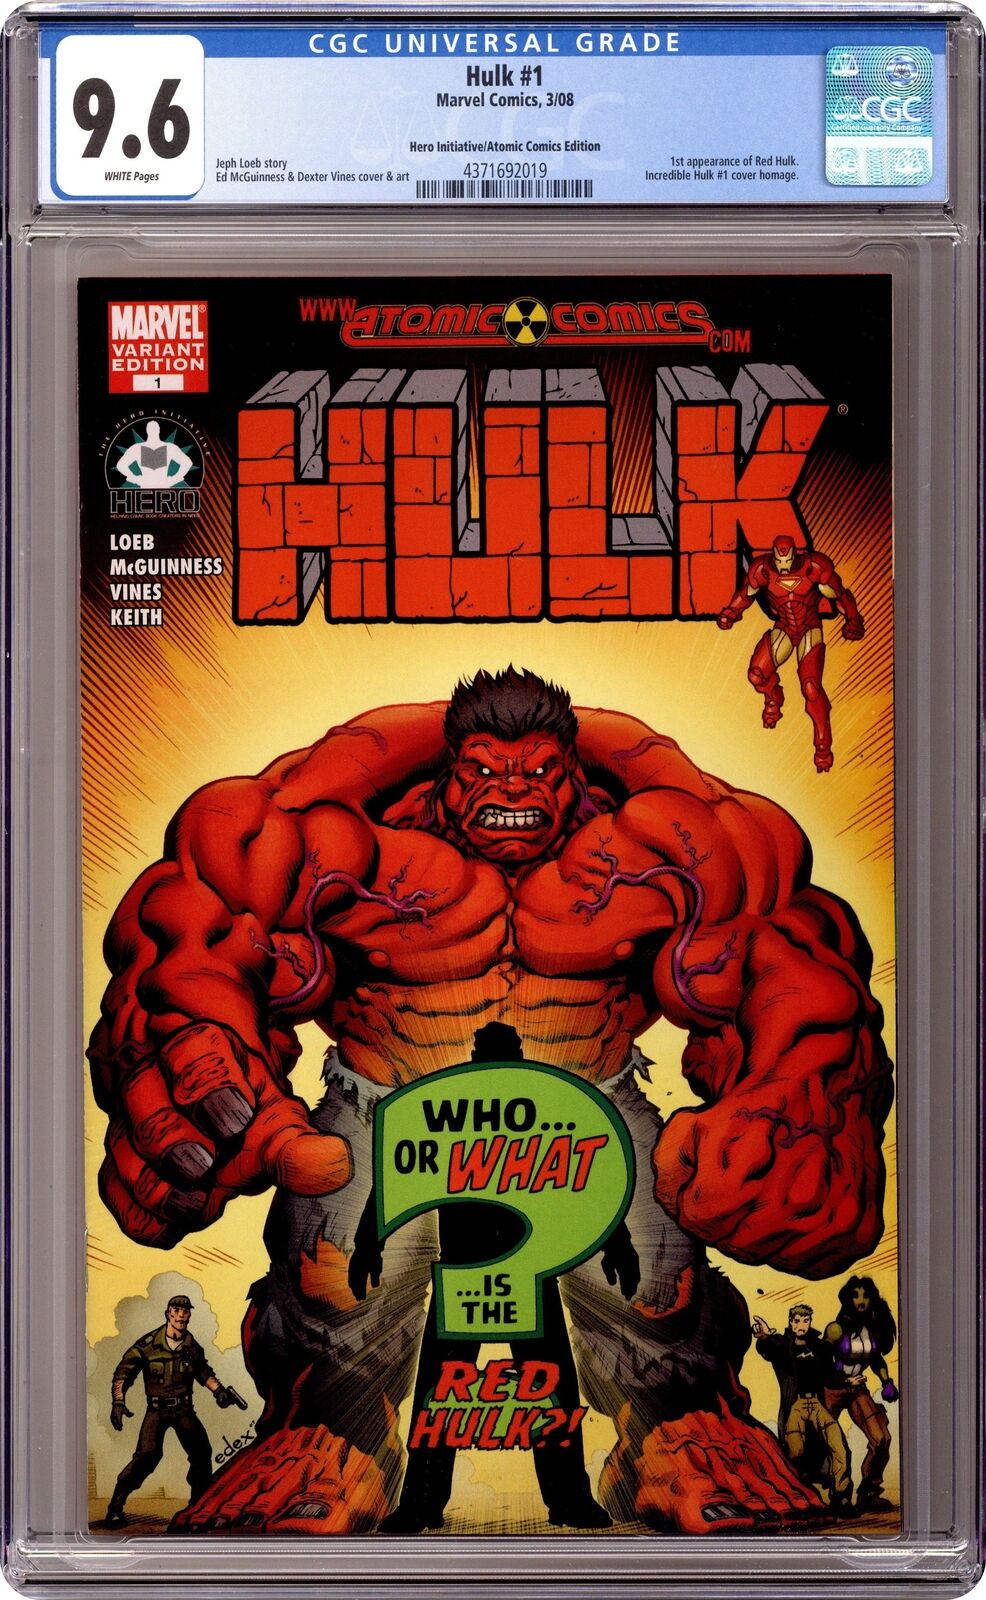 Hulk #1 McGuinness Hero Initiative/Atomic Variant CGC 9.6 2008 4371692019